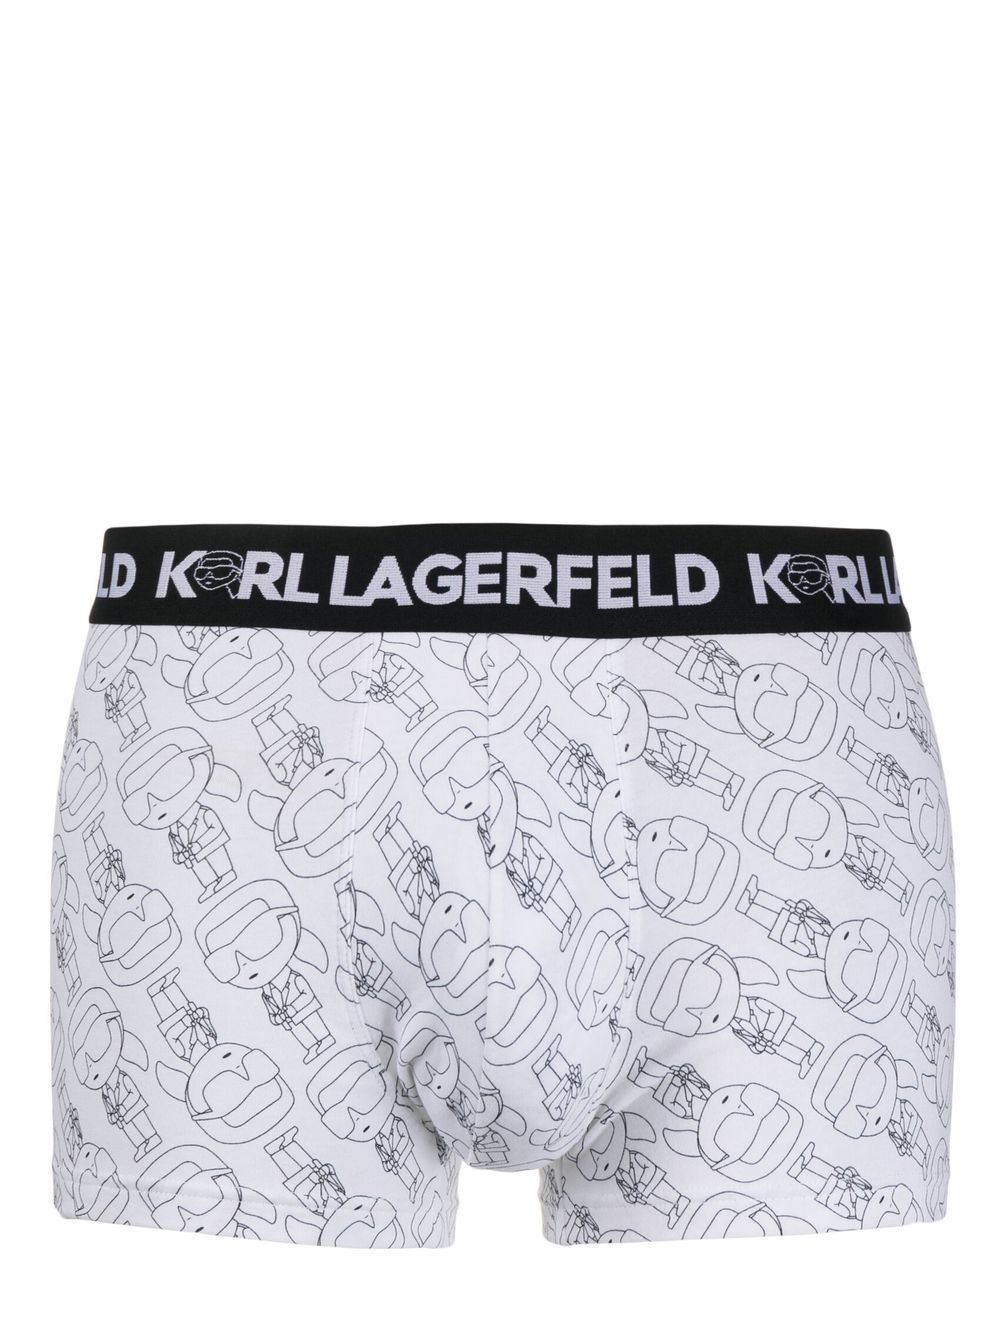 Karl Lagerfeld Ikonik 2.0 boxers (pack of 3) - Black